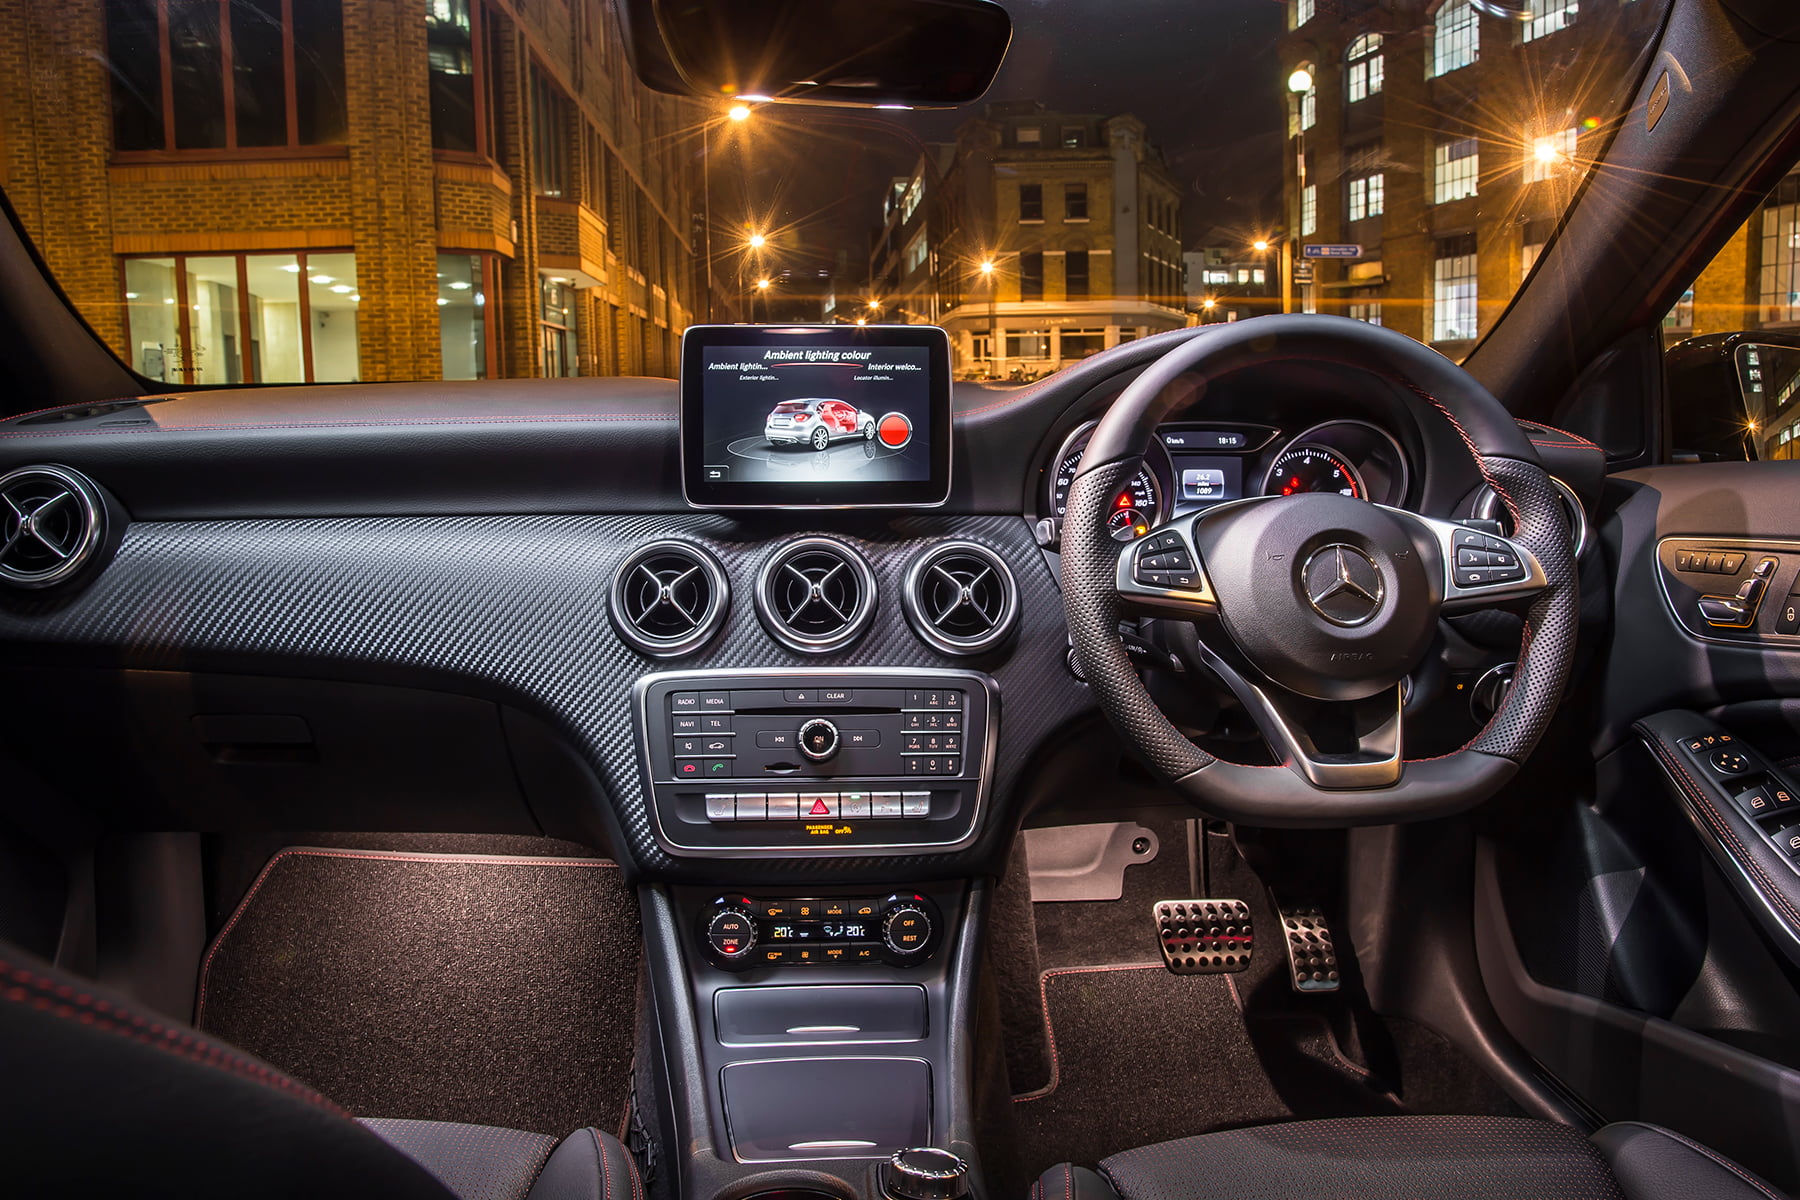 Mercedes-Benz A-Class (2012 - 2018) interior view | Expert Rating